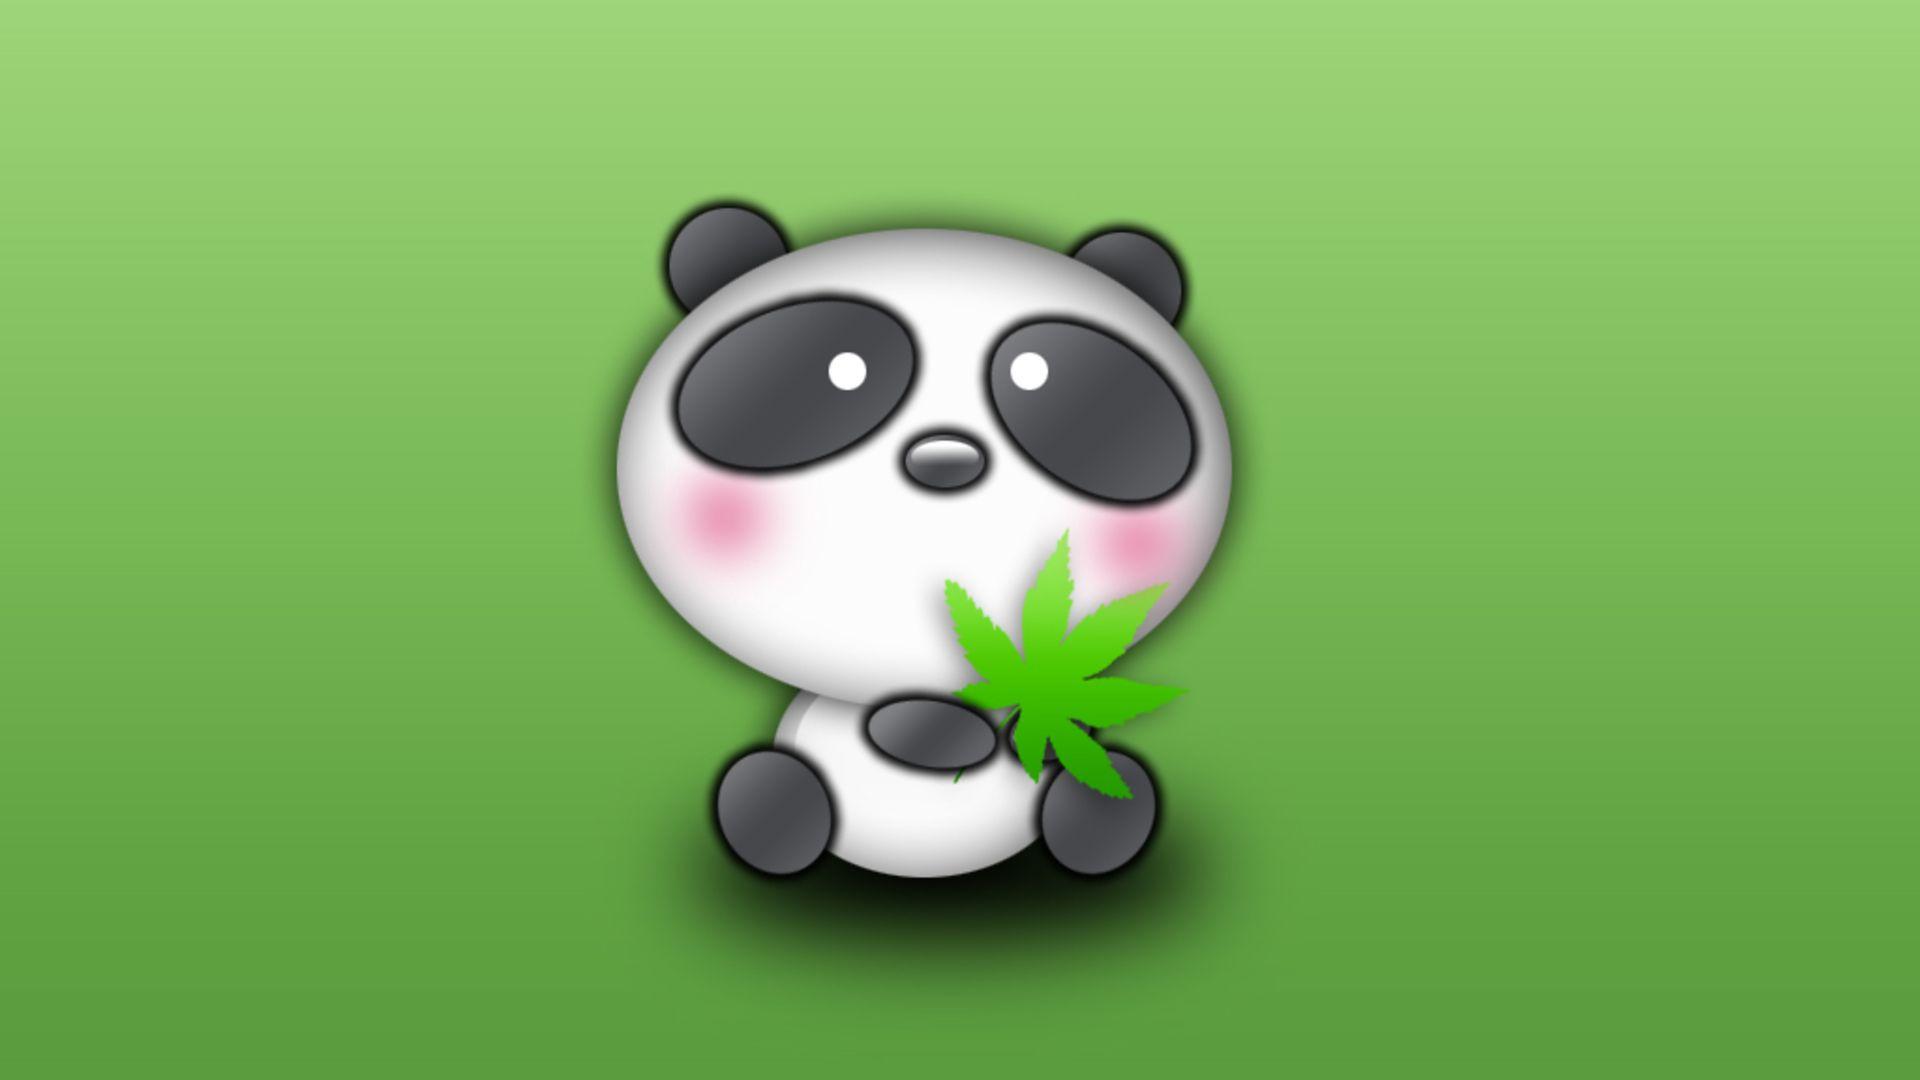 Panda bear desktop wallpaper in HD cute bears from China